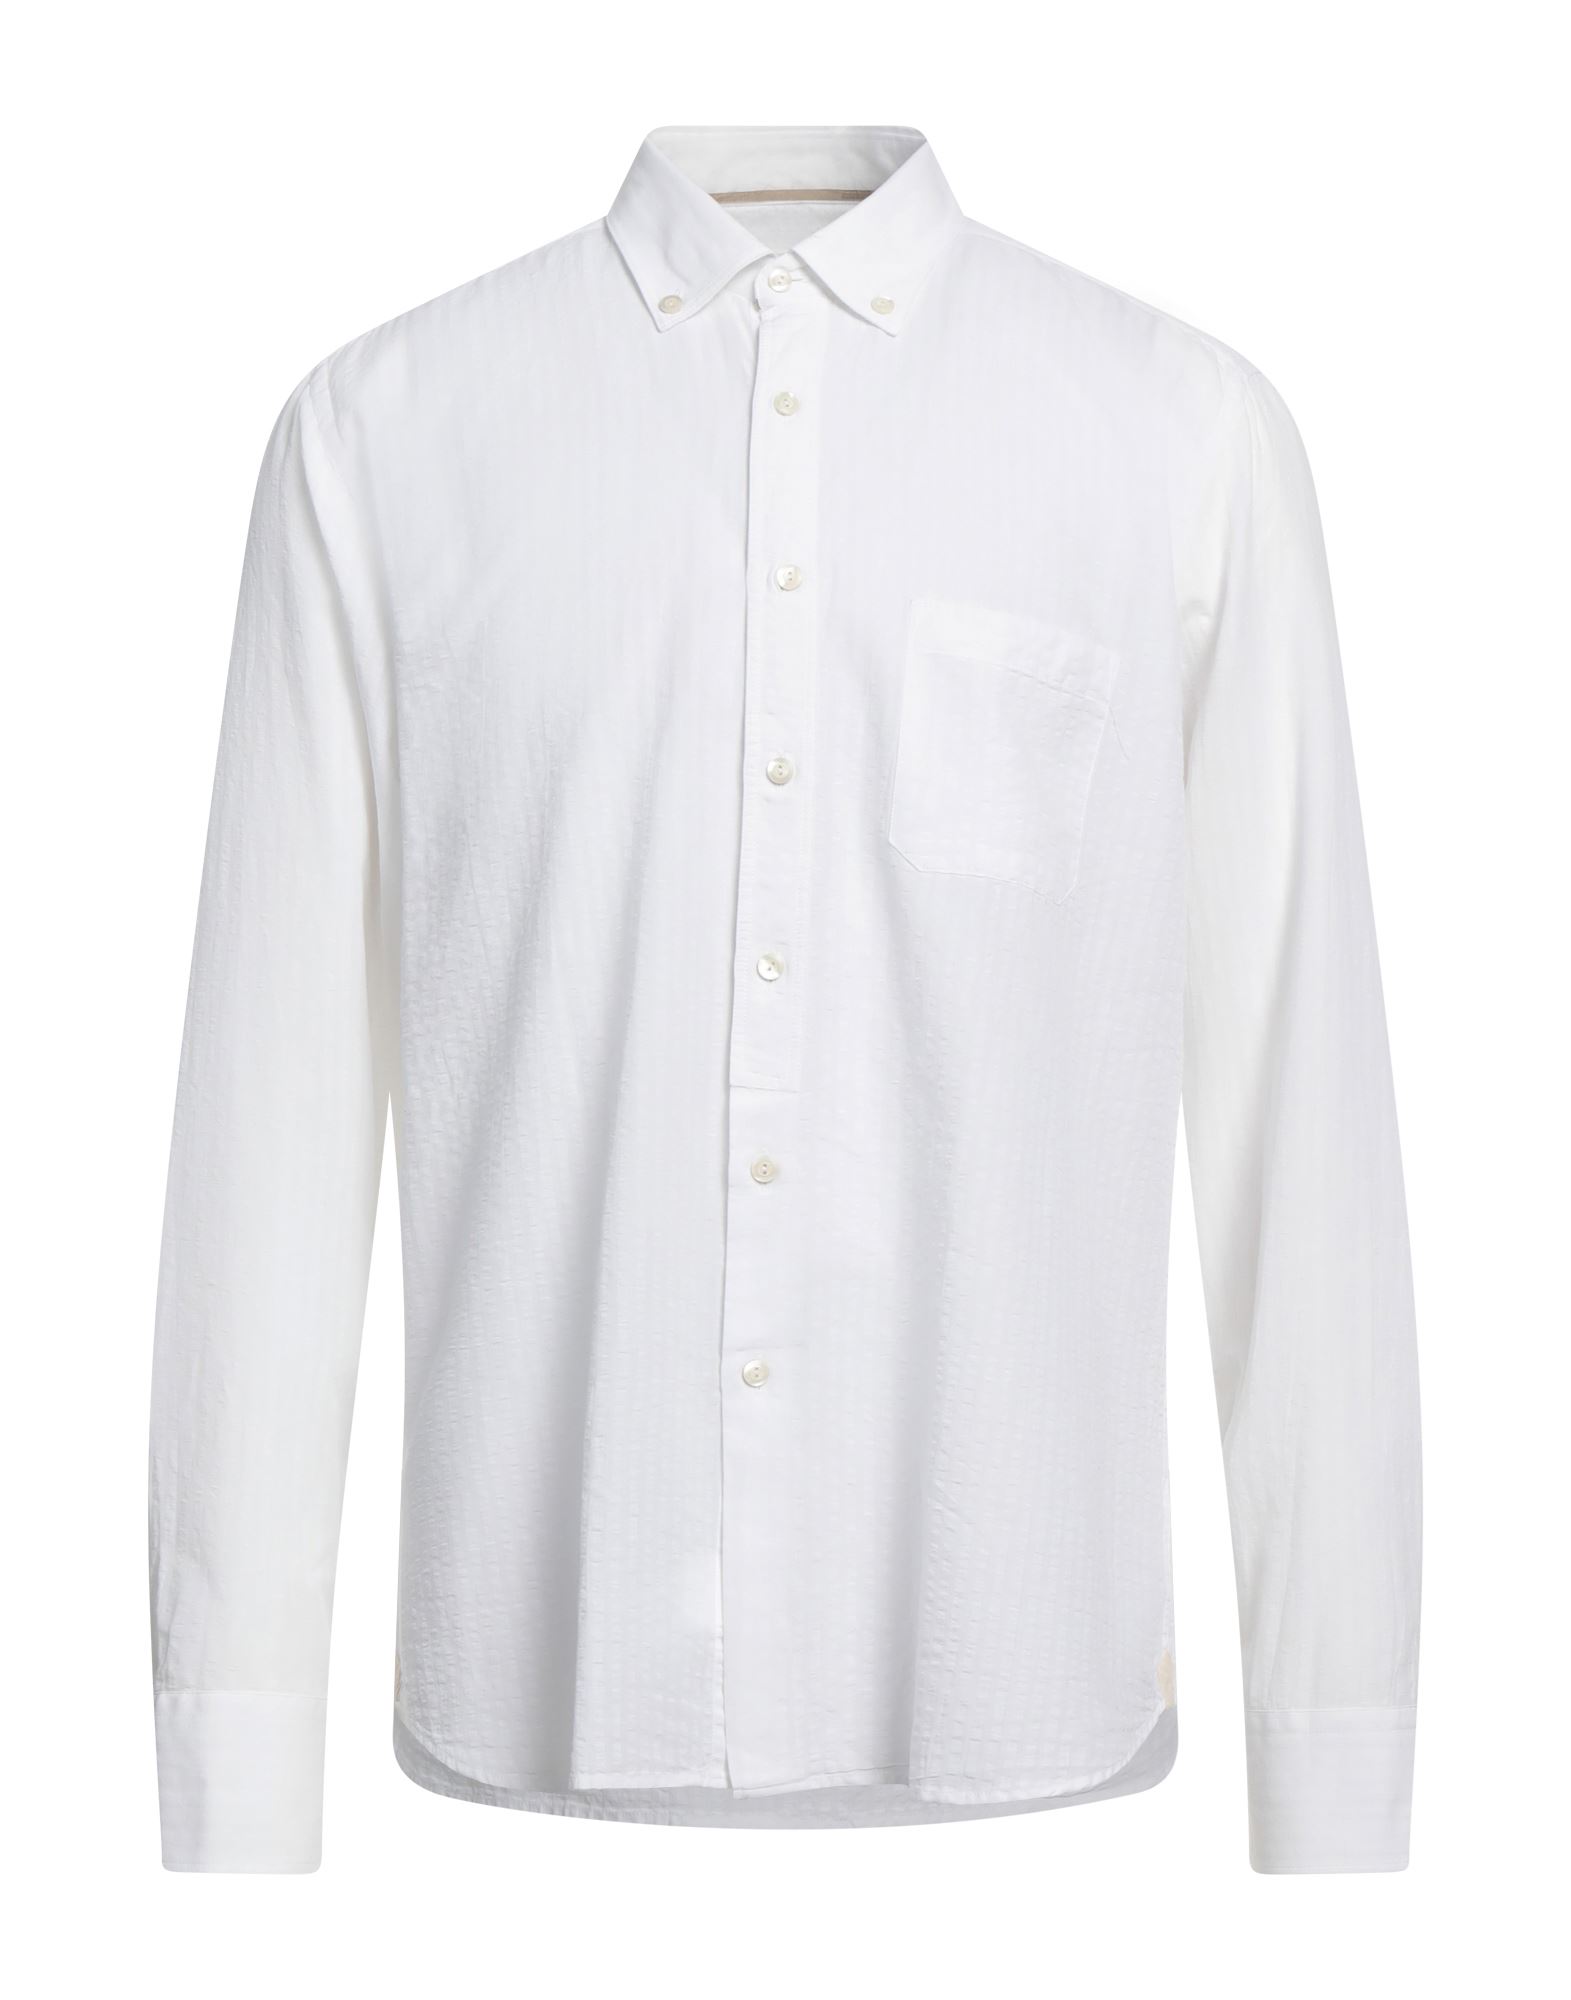 Tintoria Mattei 954 Shirts In White